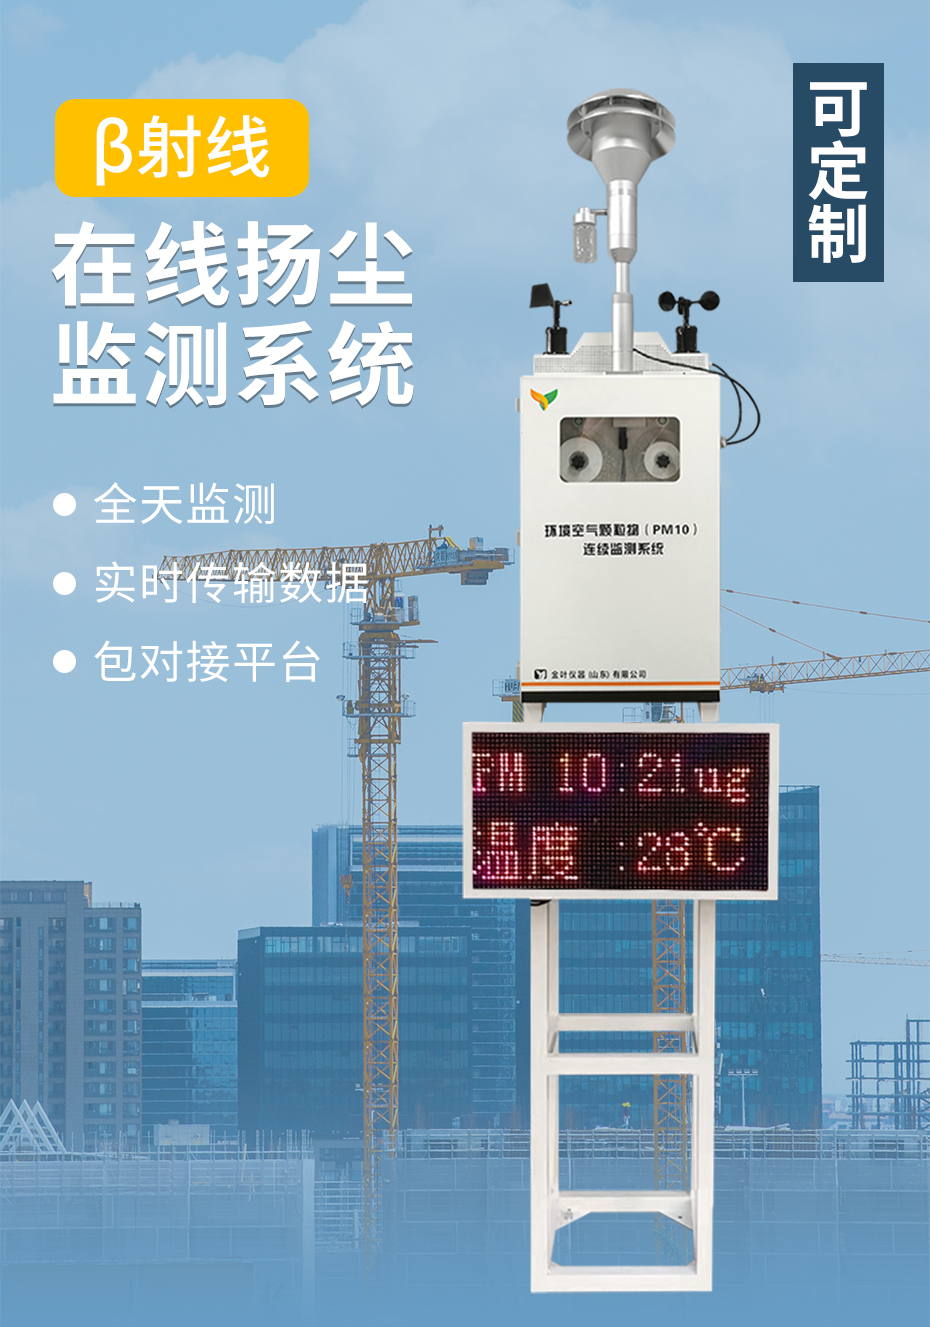 扬尘监测系统助力北京大气环境治理